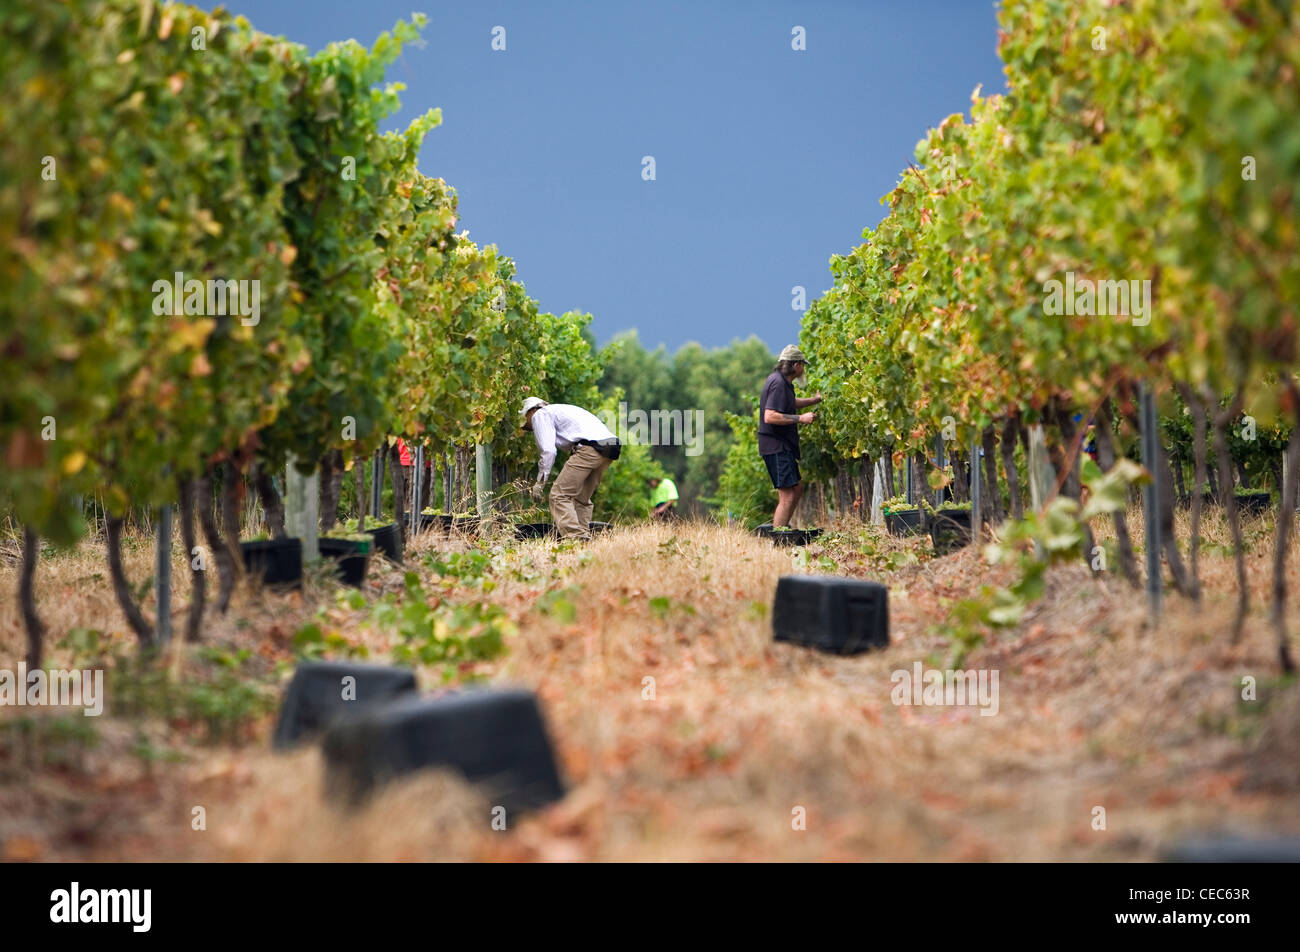 Les travailleurs produisent des raisins à la main dans un vignoble. Margaret River, Australie-Occidentale, Australie Banque D'Images